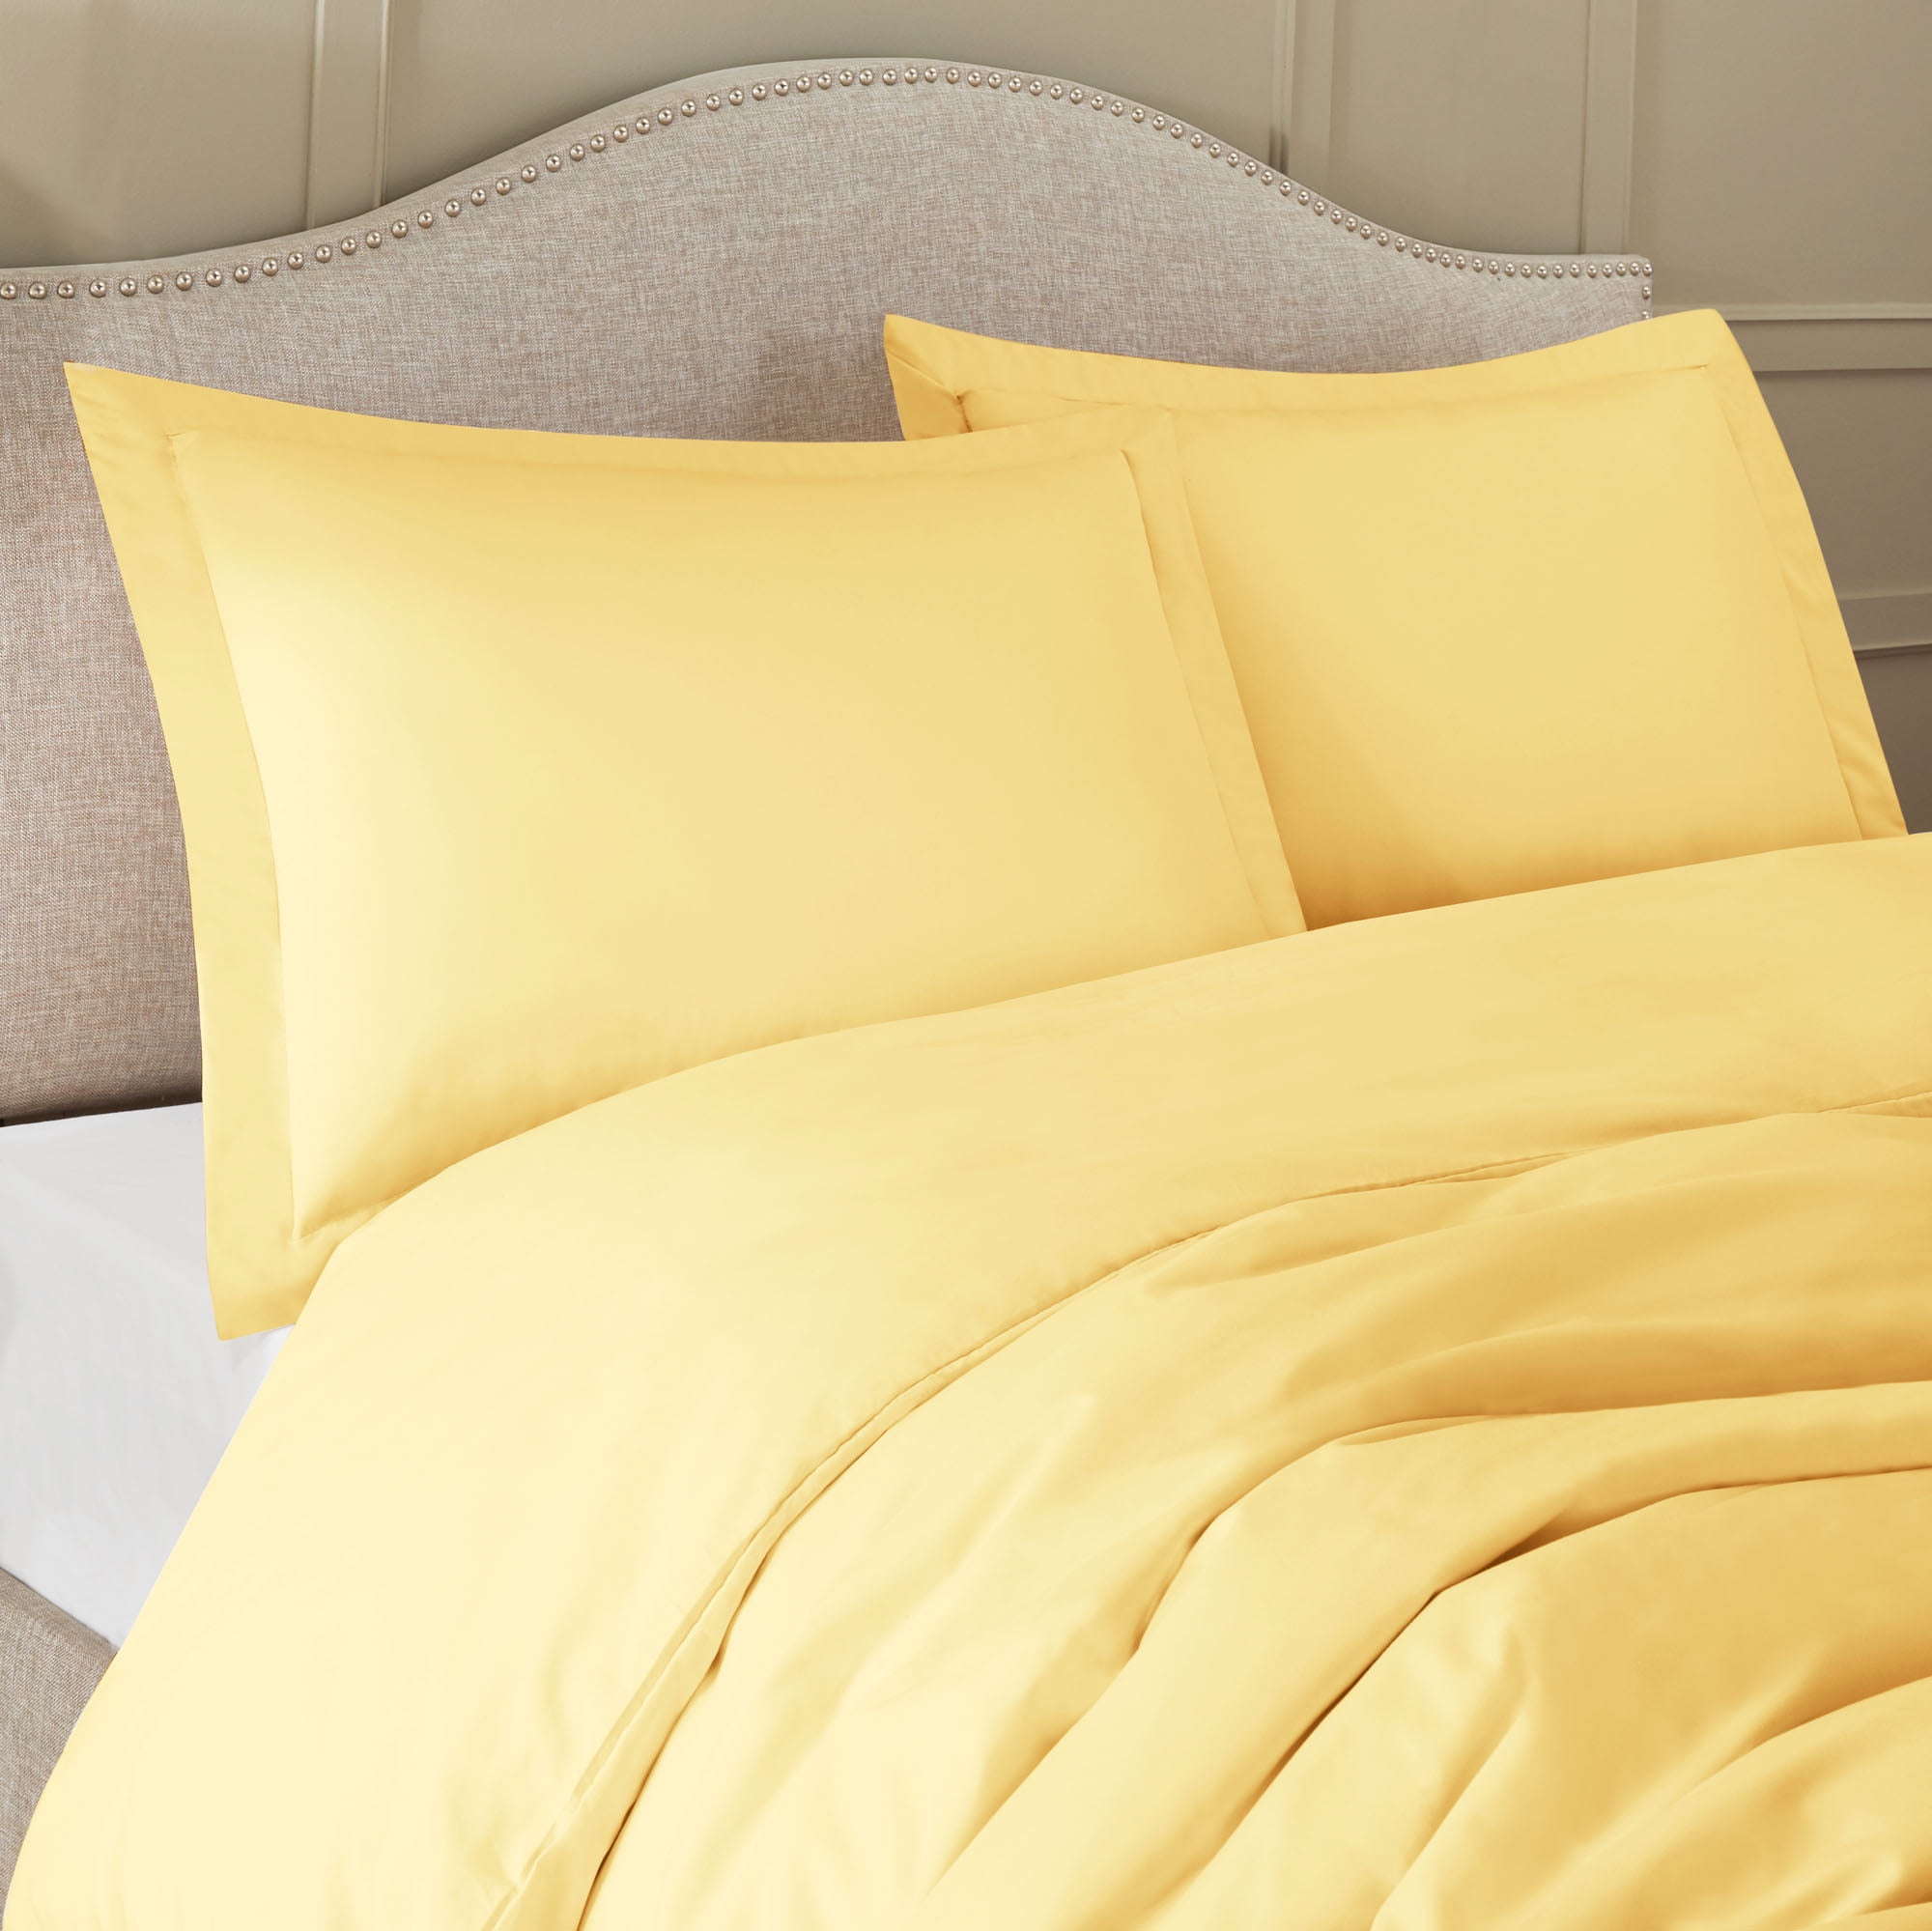 Duvet Cover Set With Pillow Shams, Light Yellow Duvet Cover